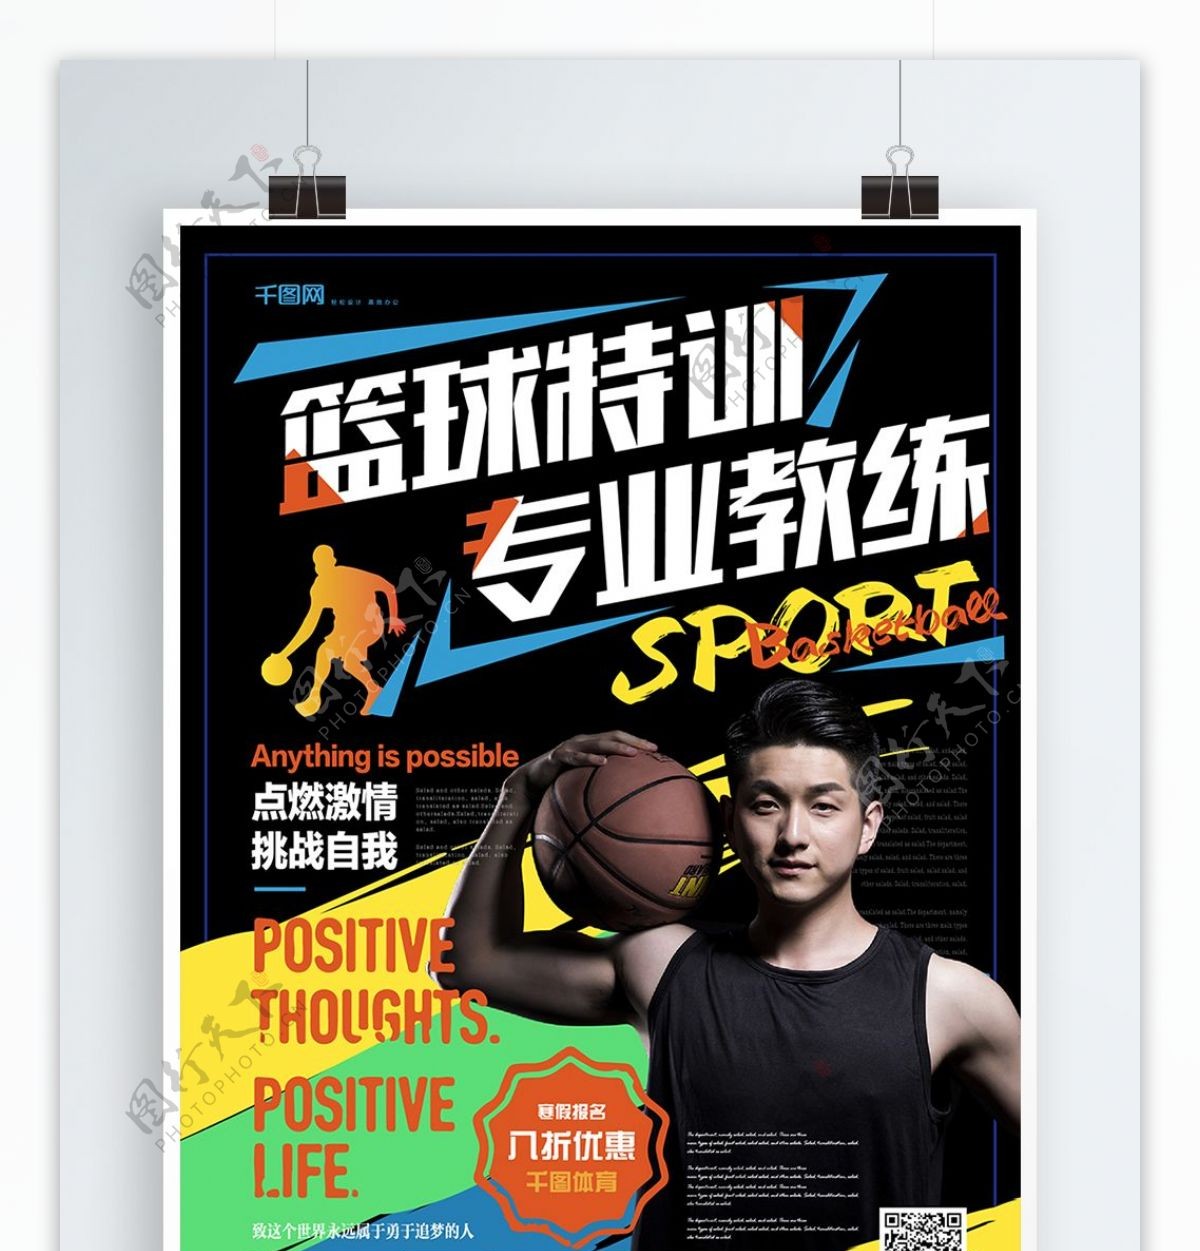 简约活力篮球特训营促销海报